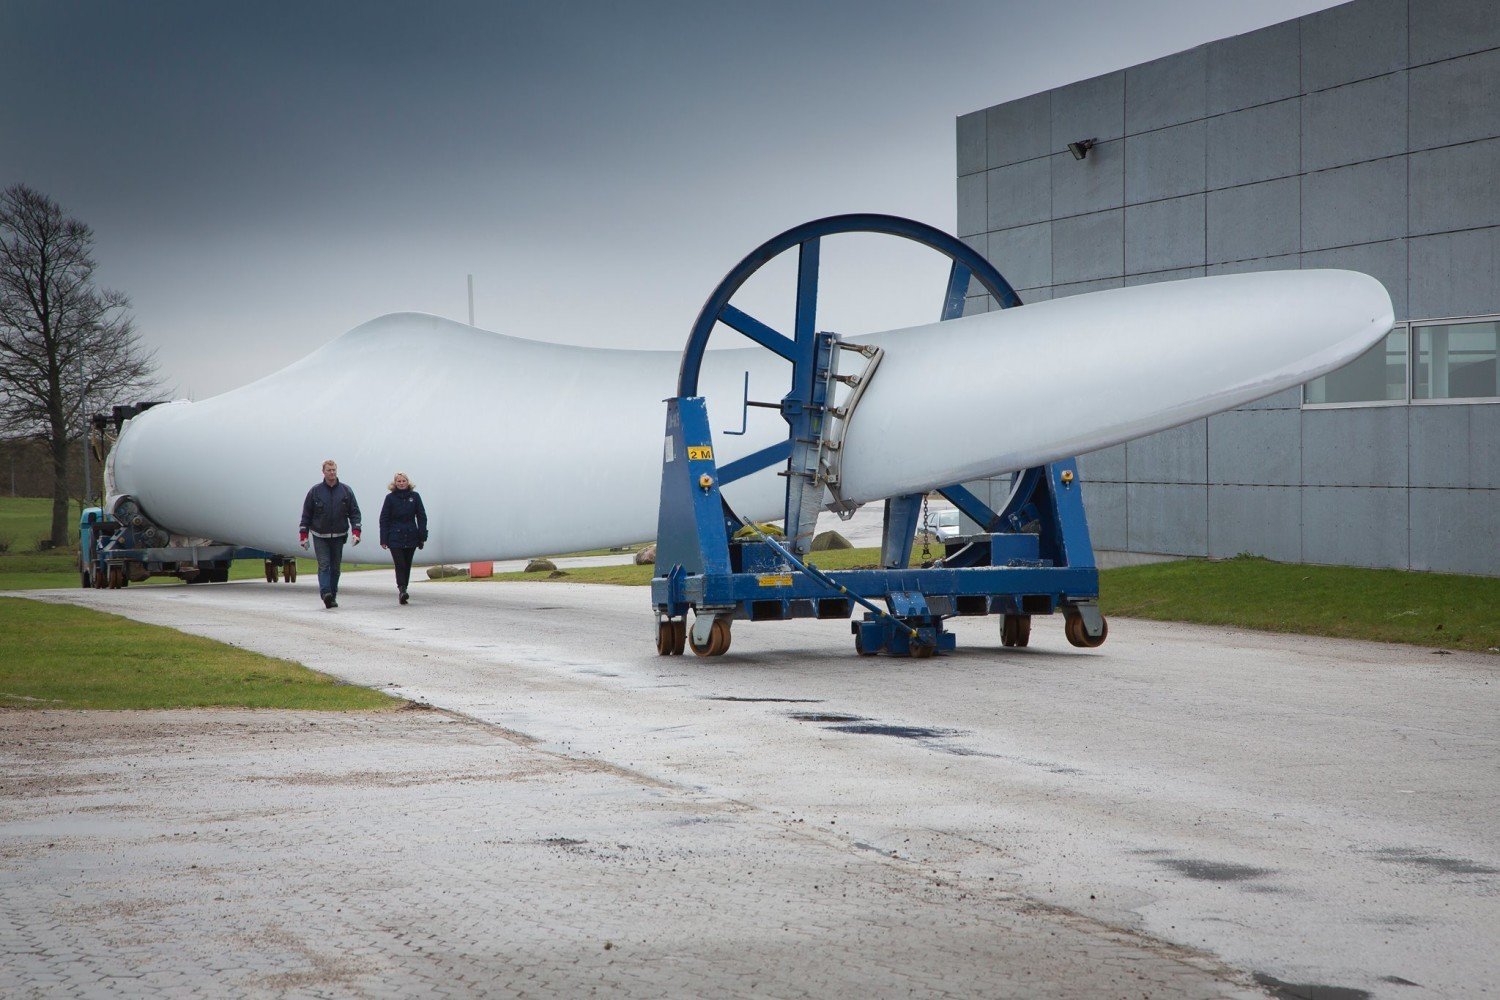 Będą większe śmigła? LM Wind Power szykuje rozbudowę zakładu pod Goleniowem  | Goleniów Nasze Miasto